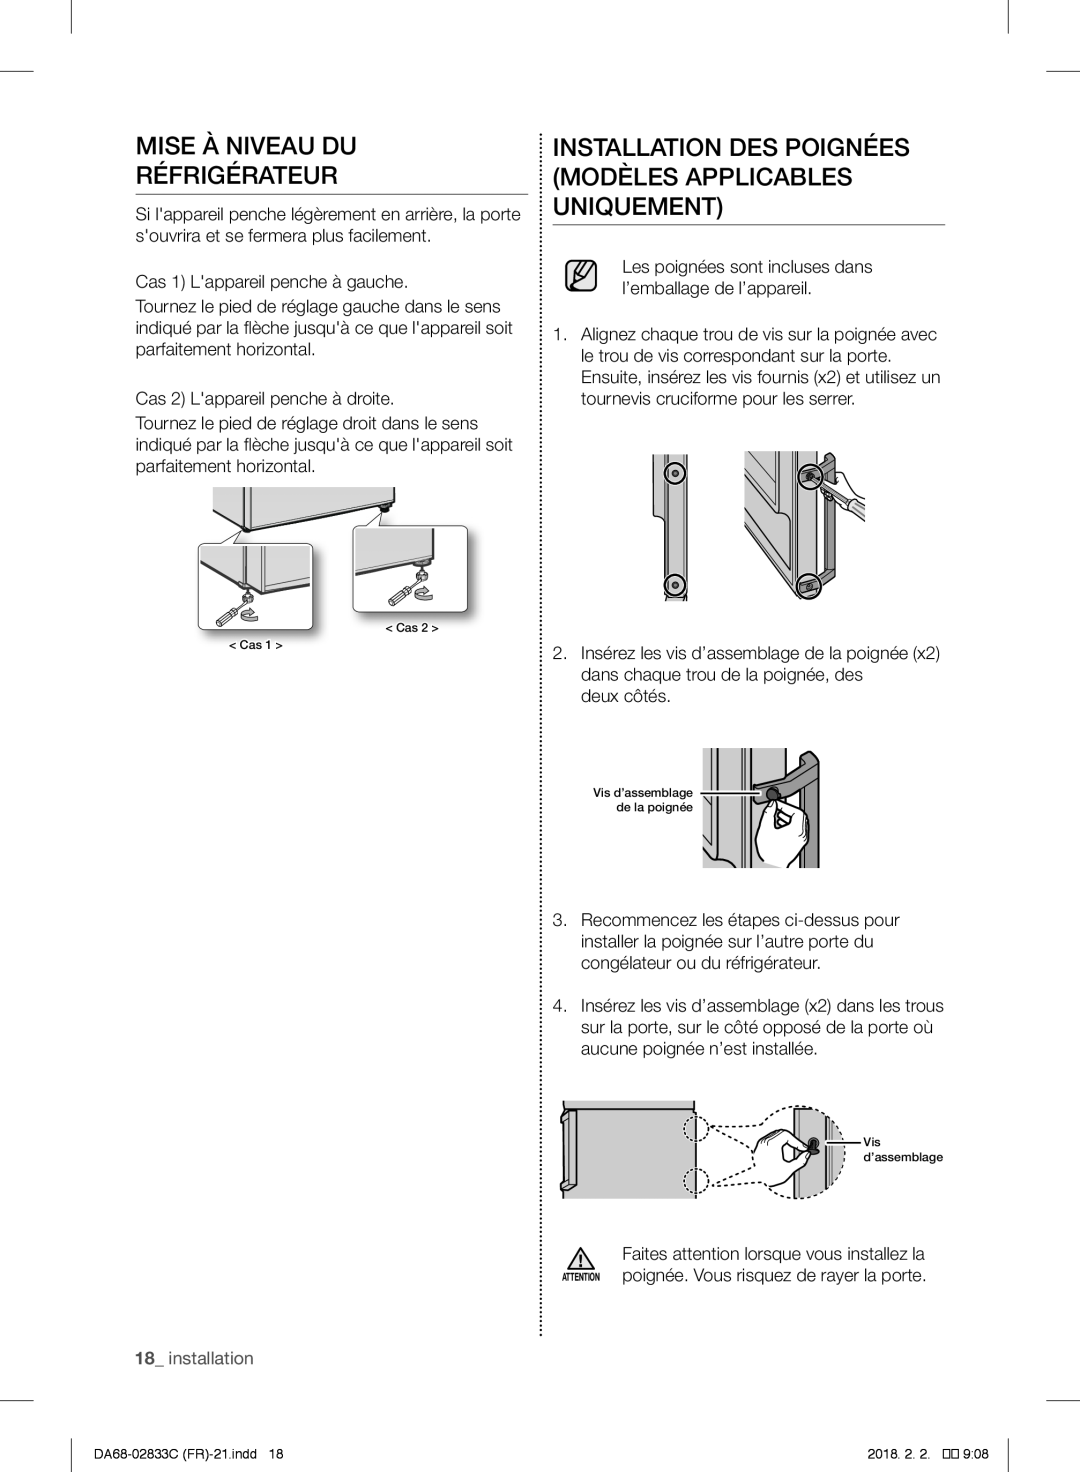 Samsung RB3EJ5200SA/EF manual Mise À Niveau Du Réfrigérateur, Installation Des Poignées Modèles Applicables Uniquement 